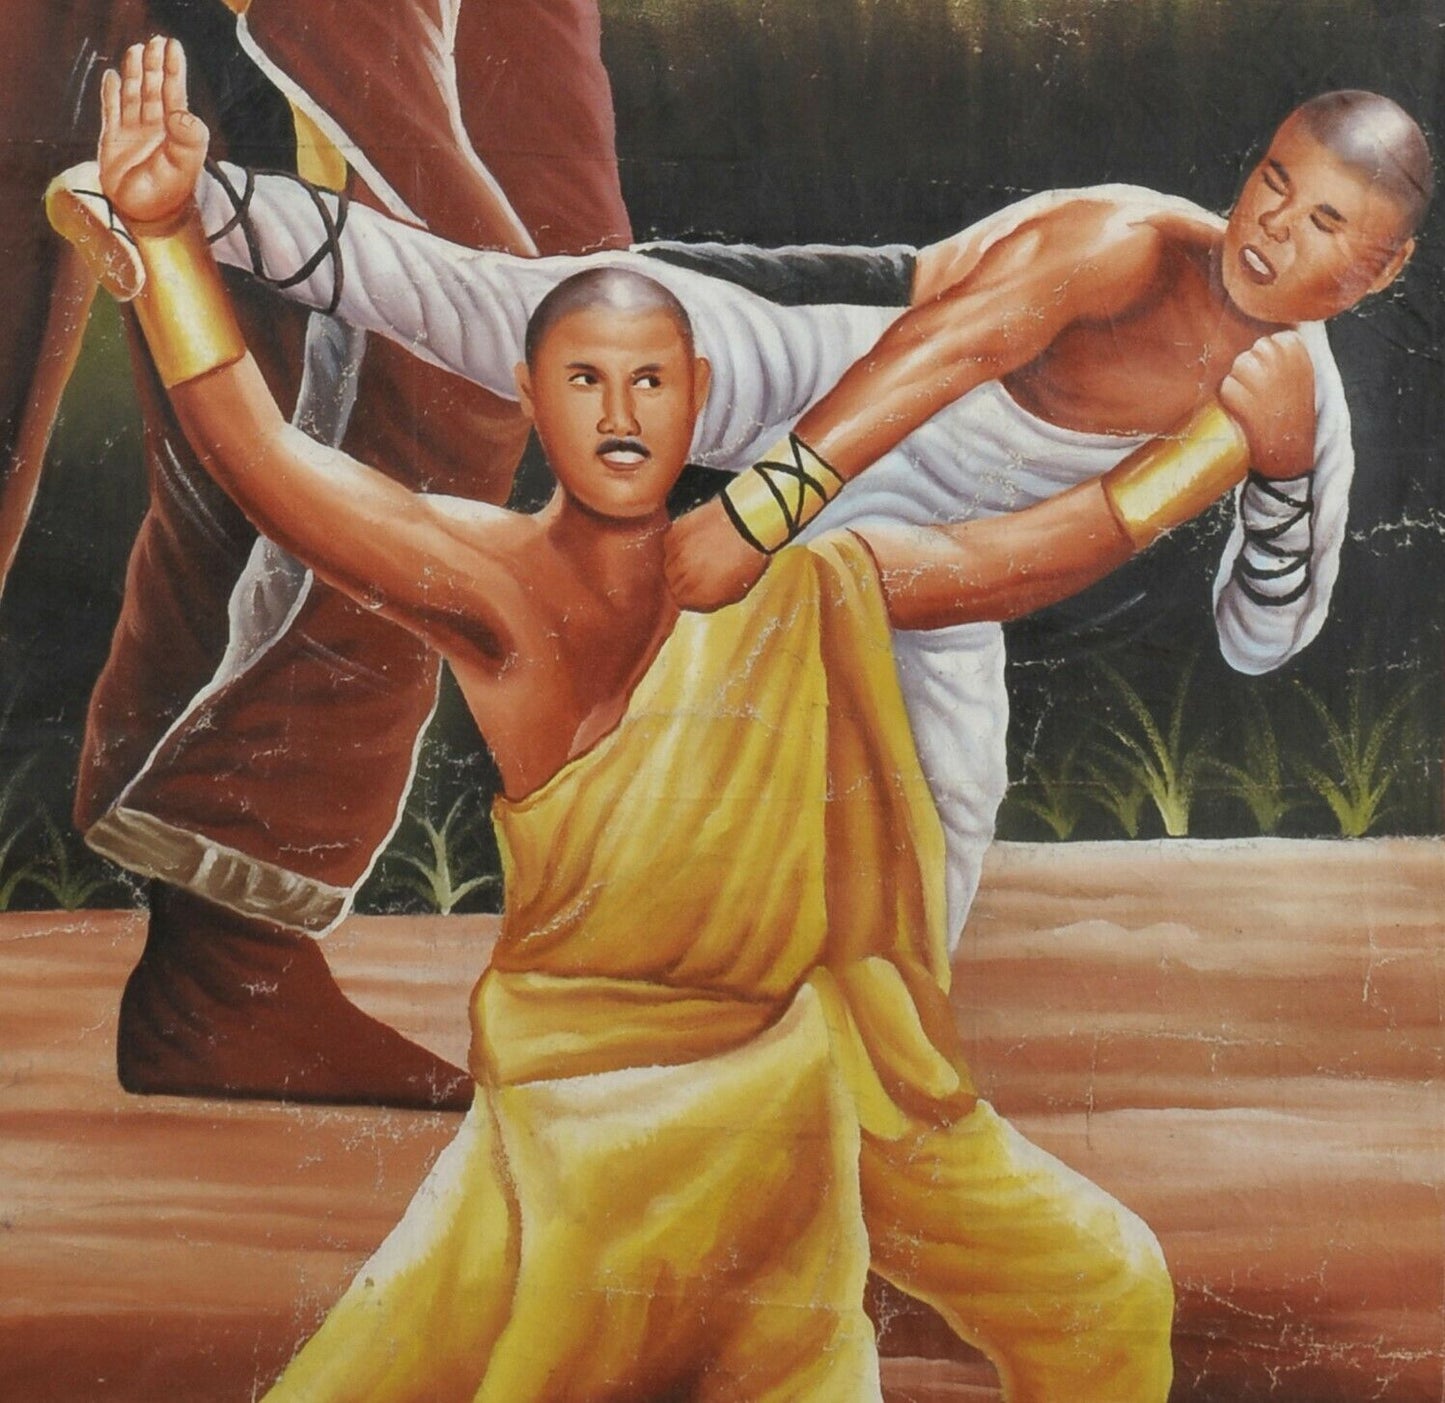 Αφίσα ταινίας Αφρικανικός κινηματογράφος ζωγραφισμένος στο χέρι της Γκάνας SHAOLIN VRS LAMA - Tribalgh